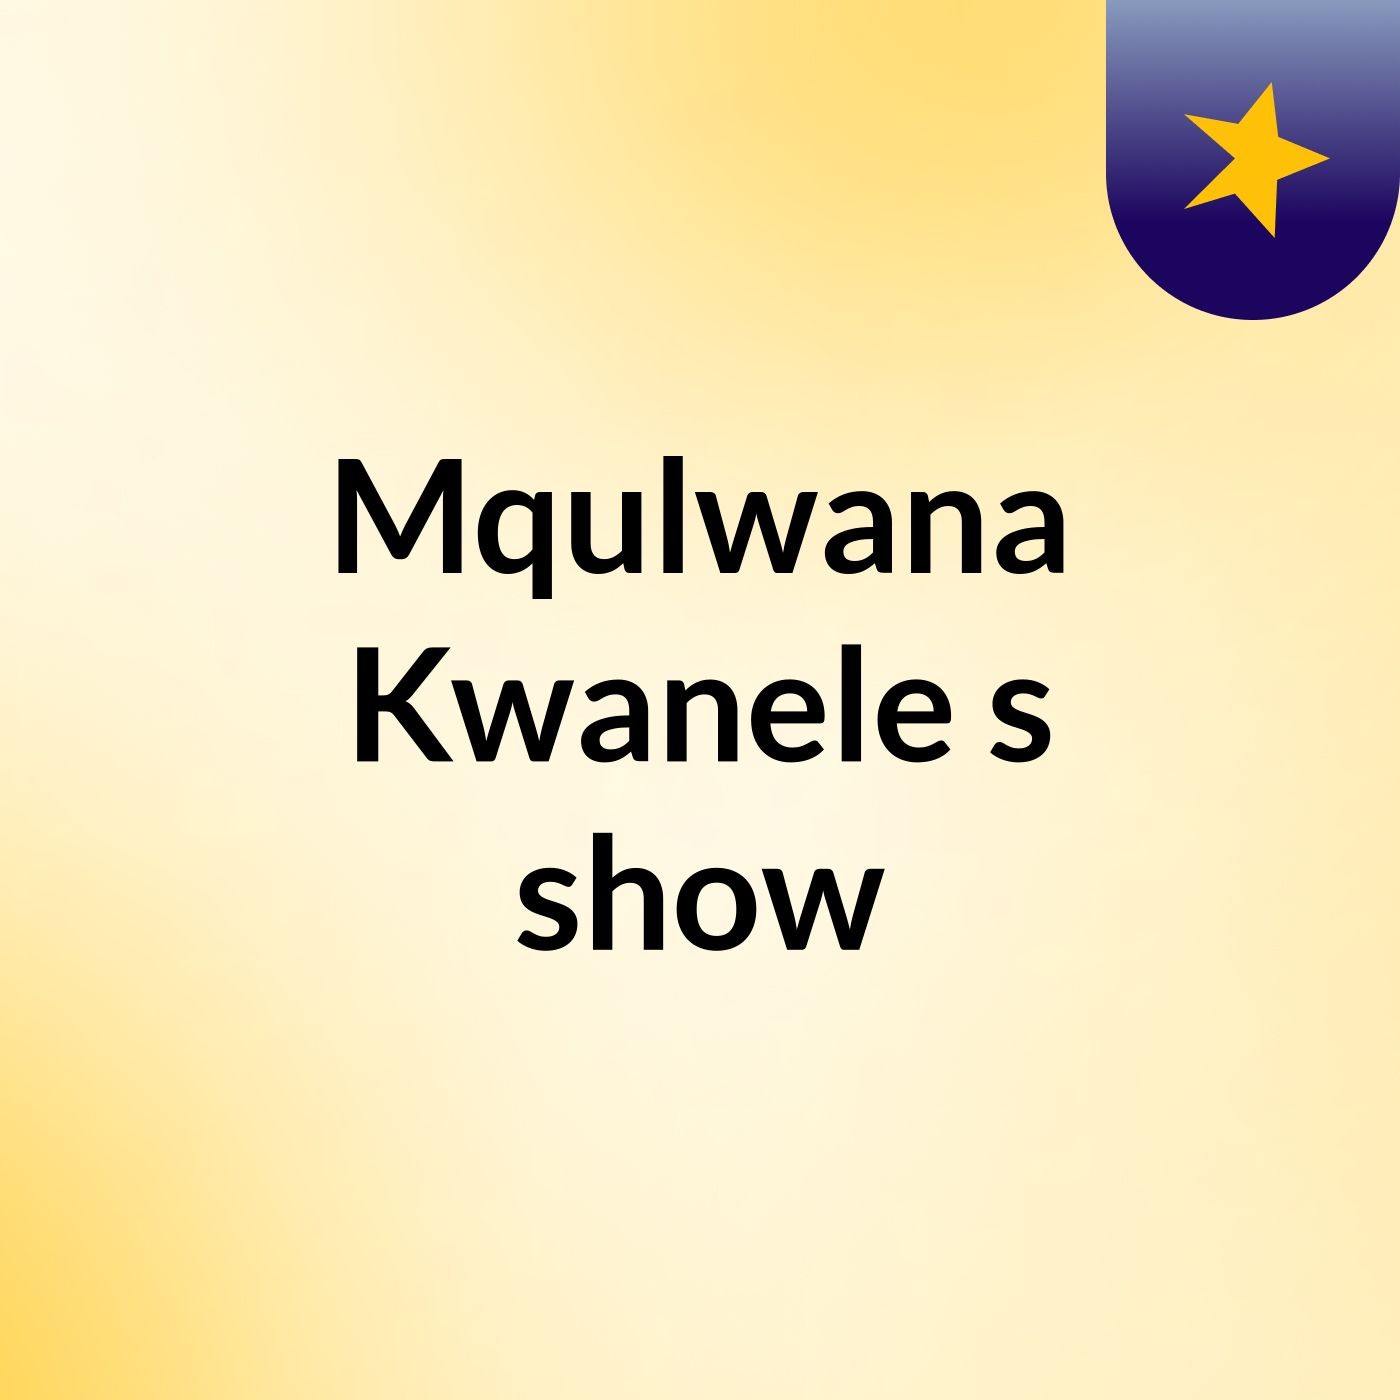 Mqulwana Kwanele's show